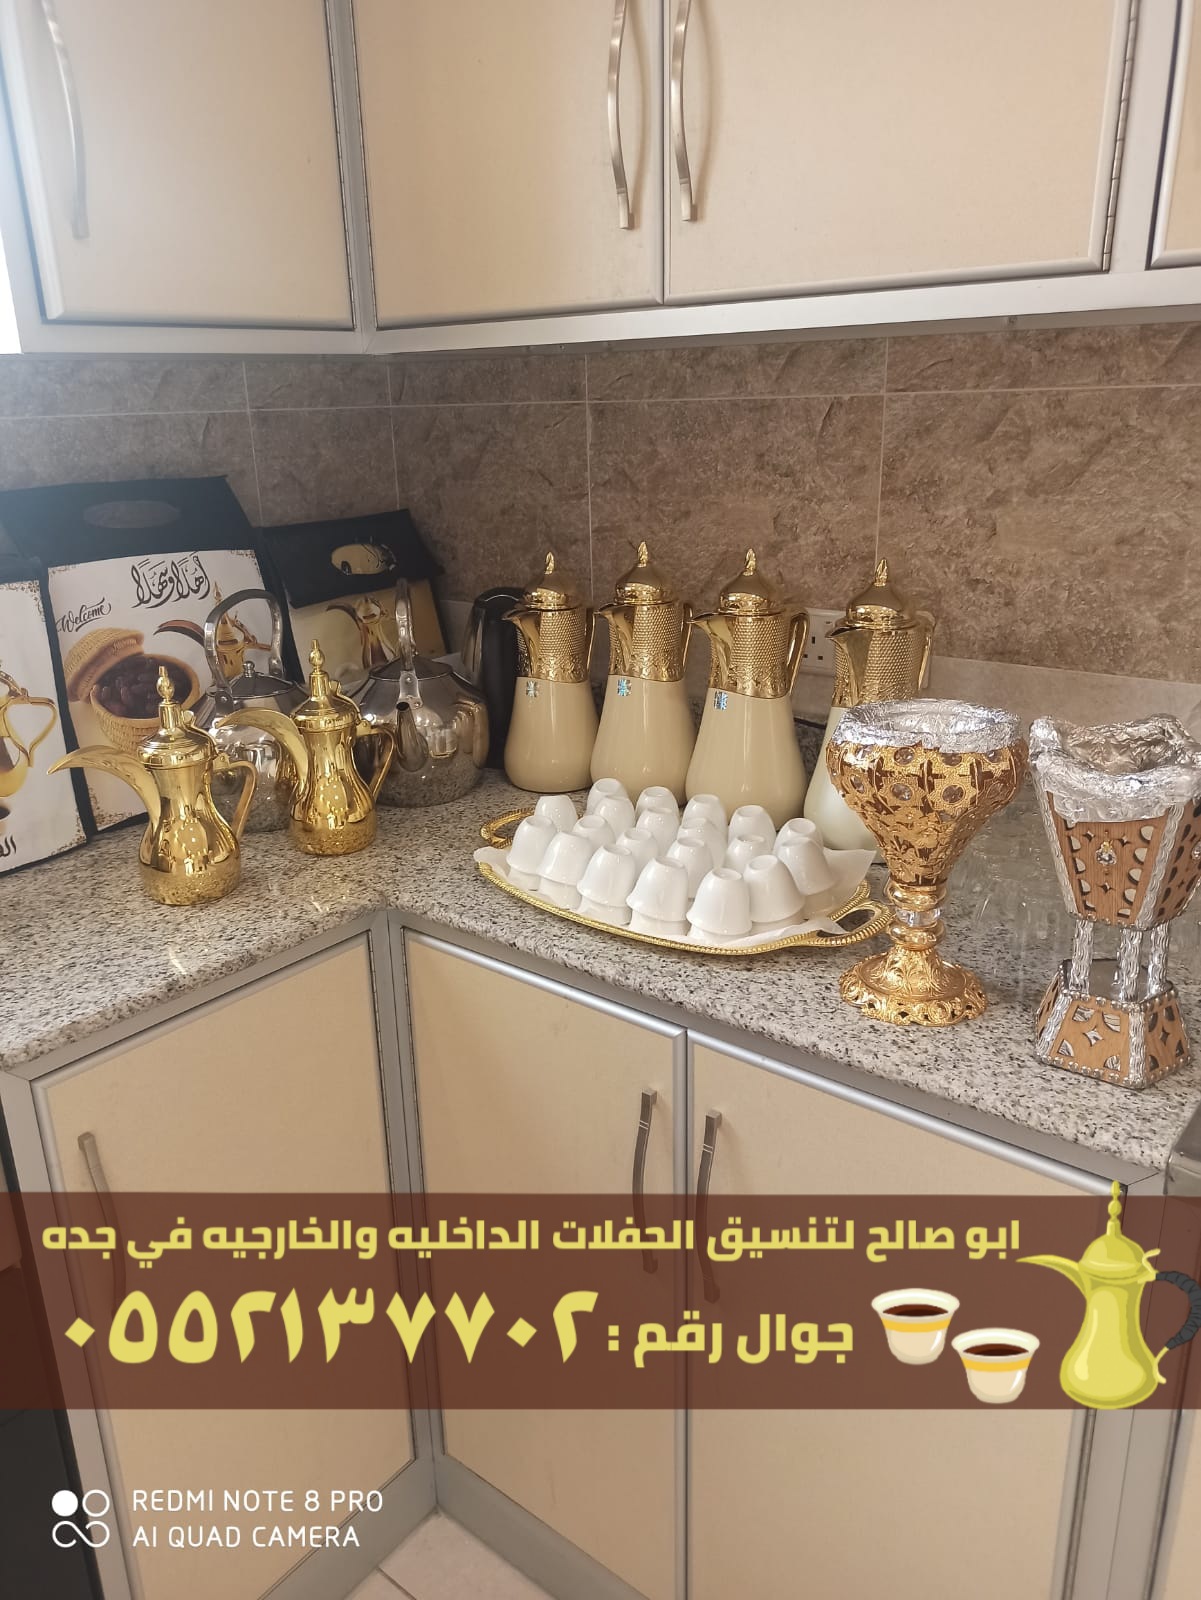 صبابين قهوة في جدة و صبابات قهوه , 0552137702 P_2371x6q701